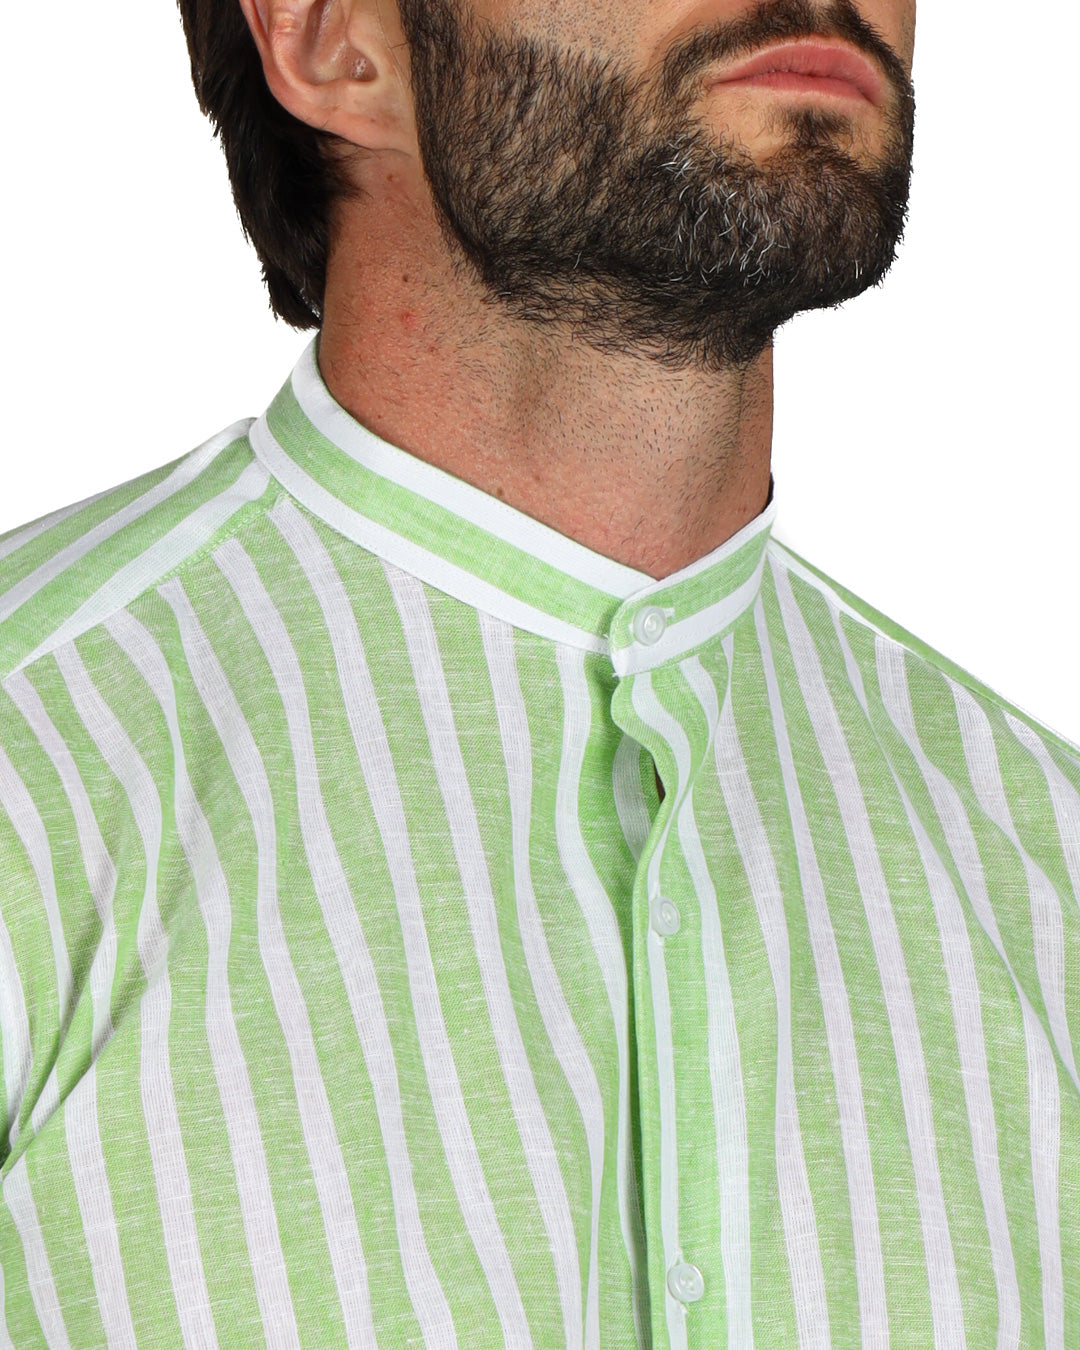 Procida - Camicia coreana a righe larghe verdi in lino